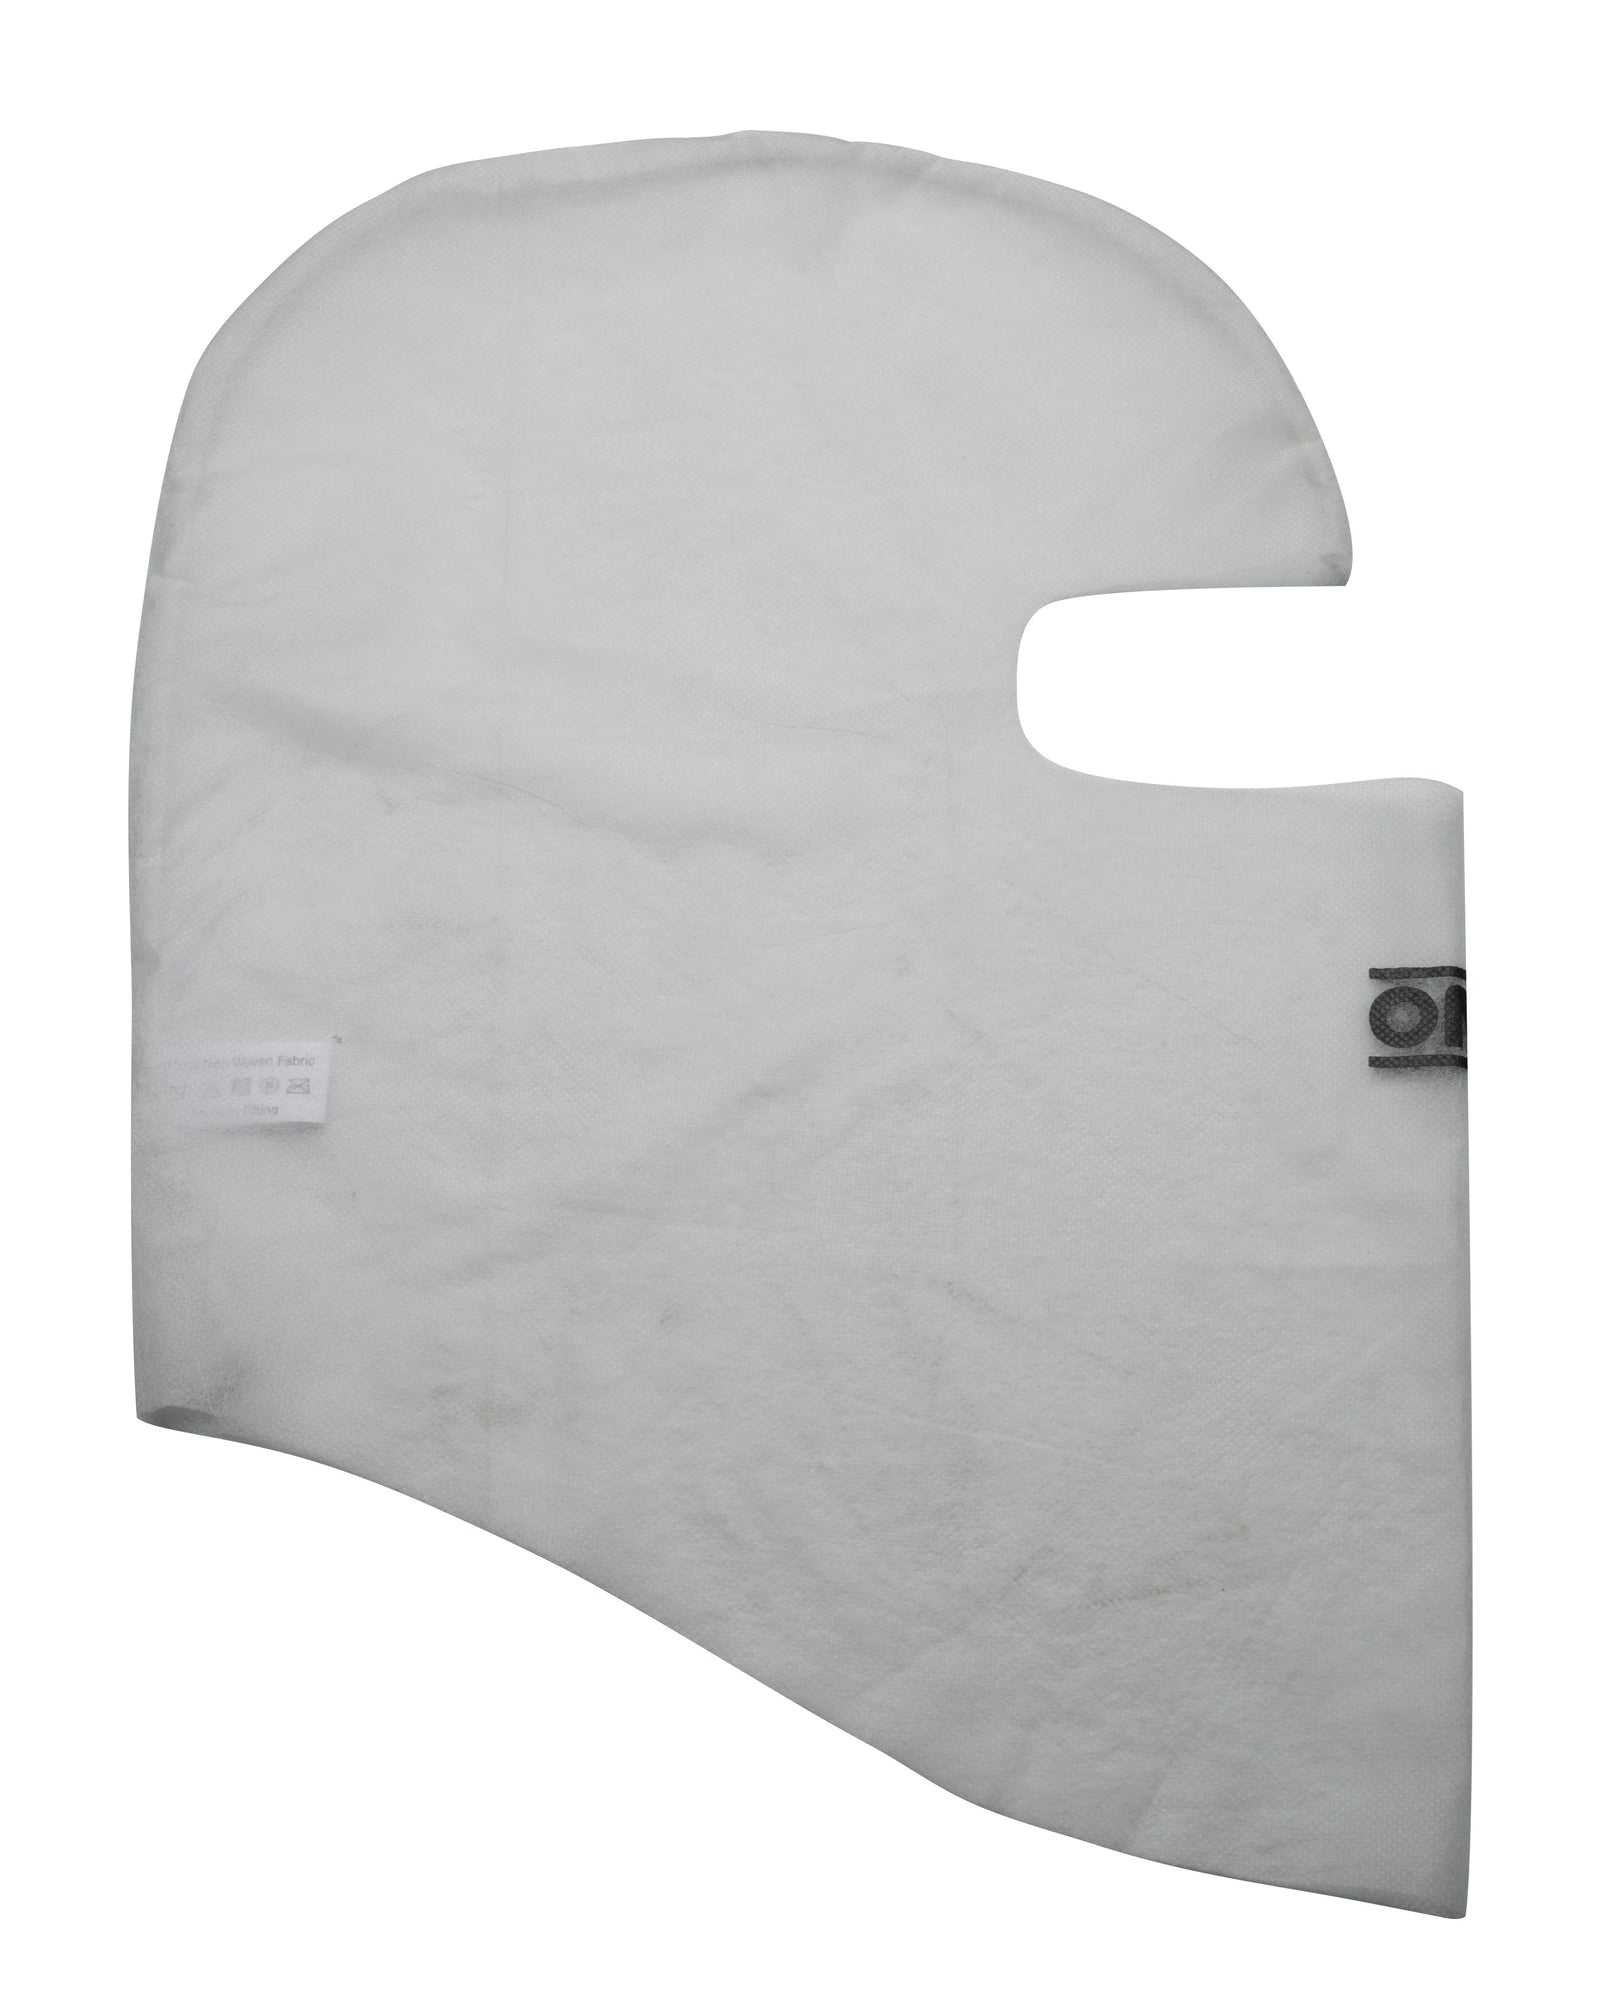 OMP KE0-3026-A01 Одноразові подшлемники, білі, 25 штук в упаковці Photo-1 